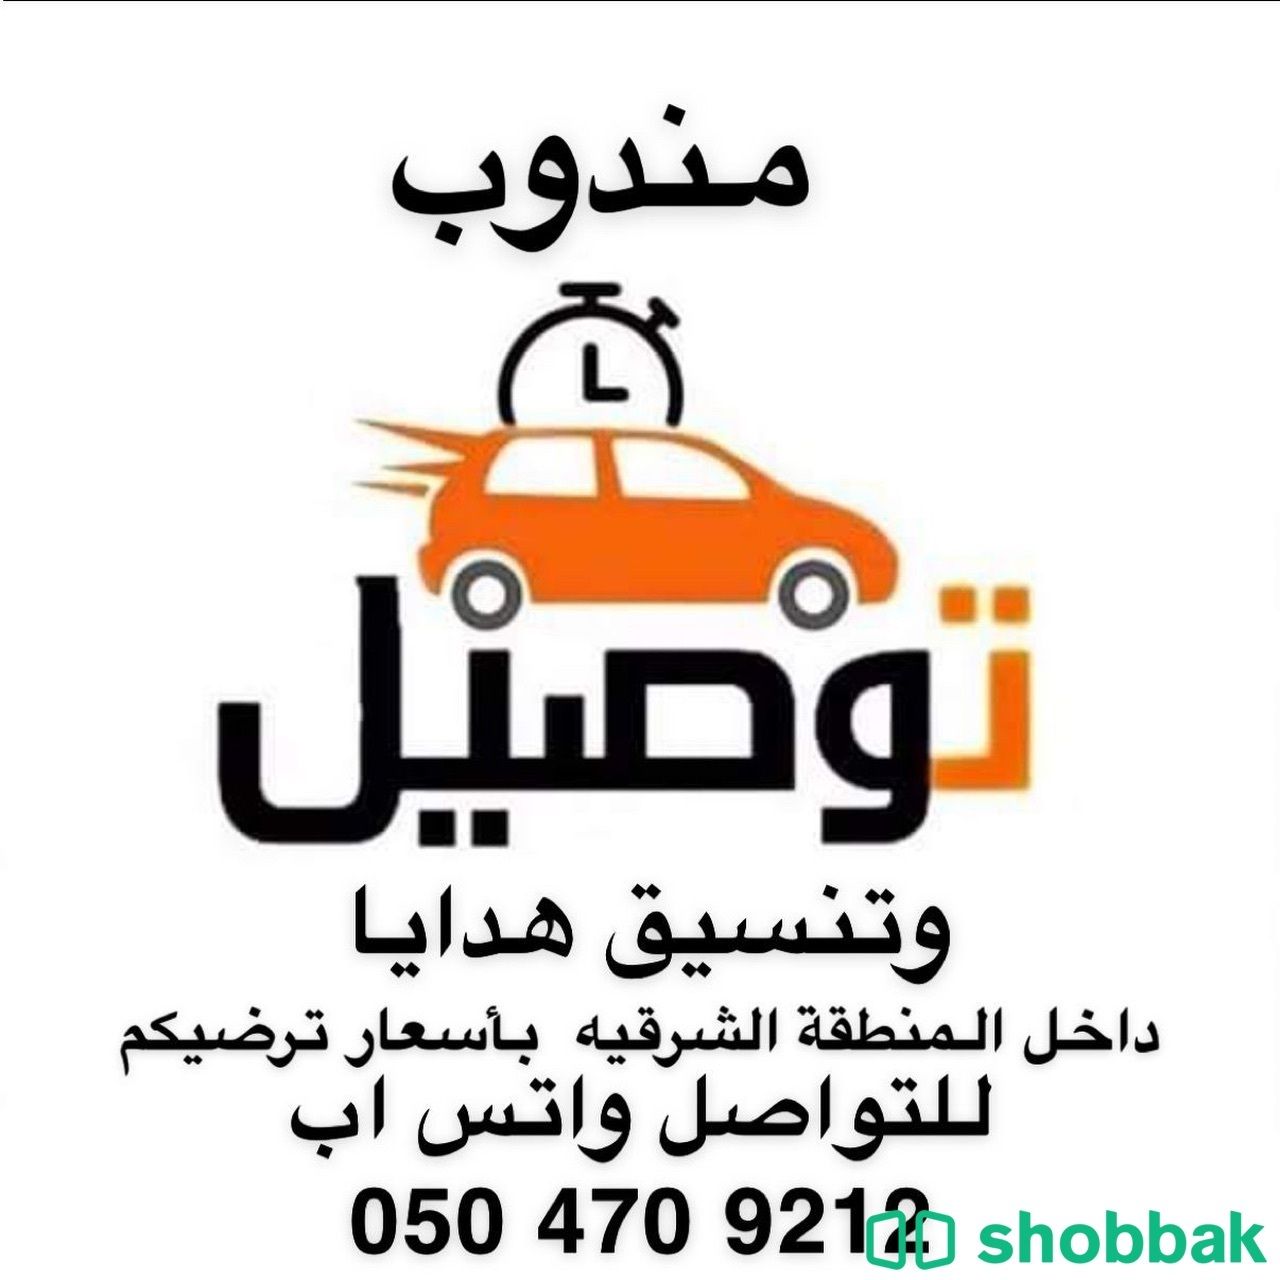 مندوب توصيل Shobbak Saudi Arabia